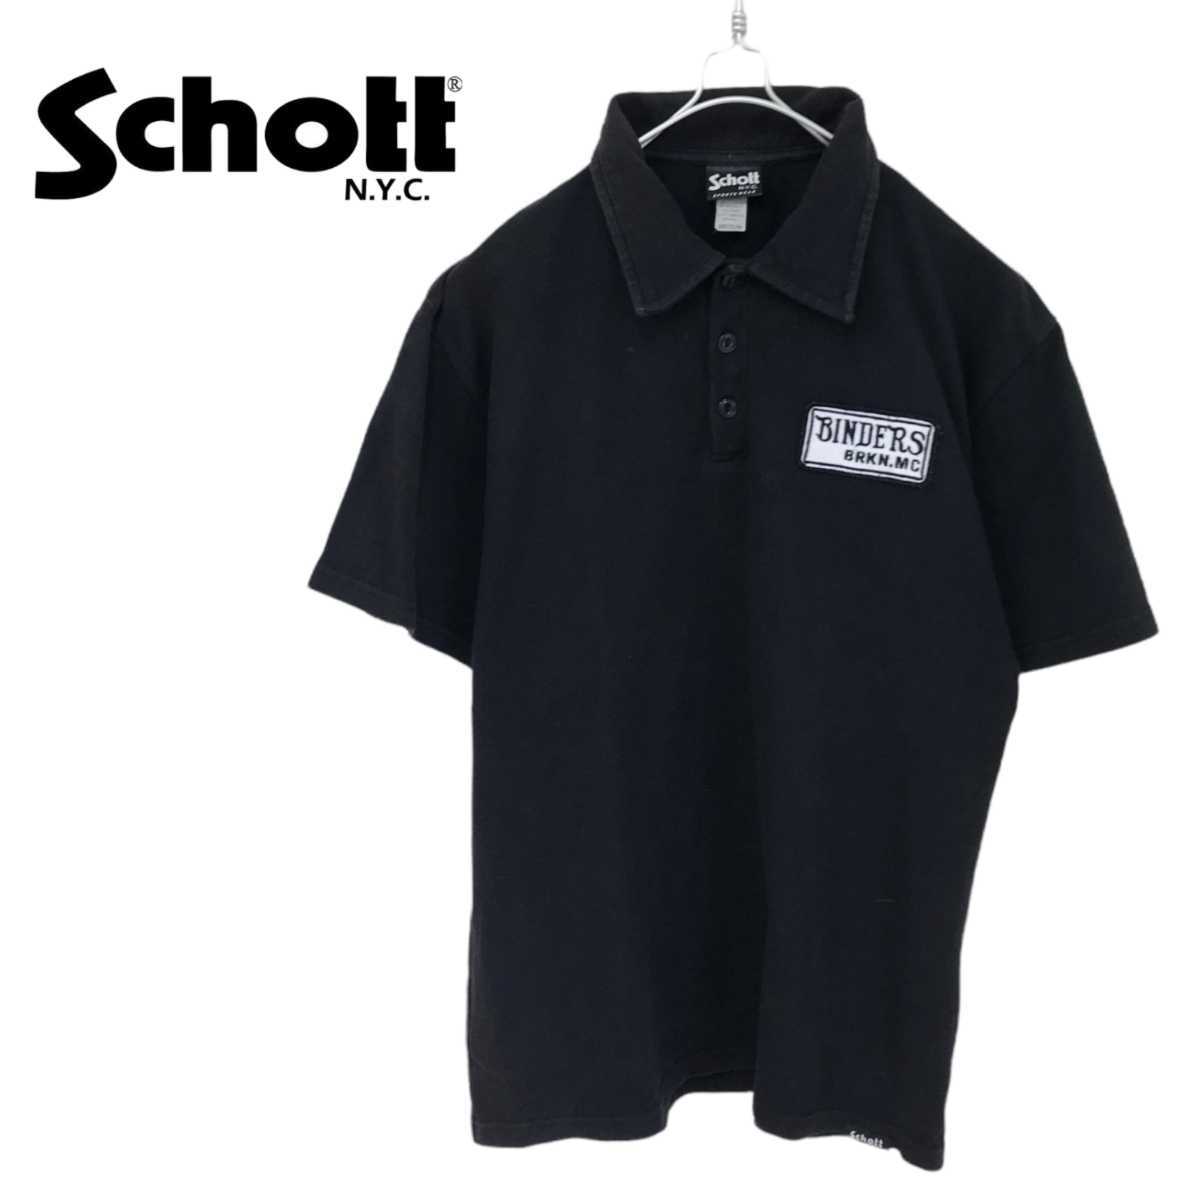 【Schott】Binders ワッペンロゴ ポロシャツ